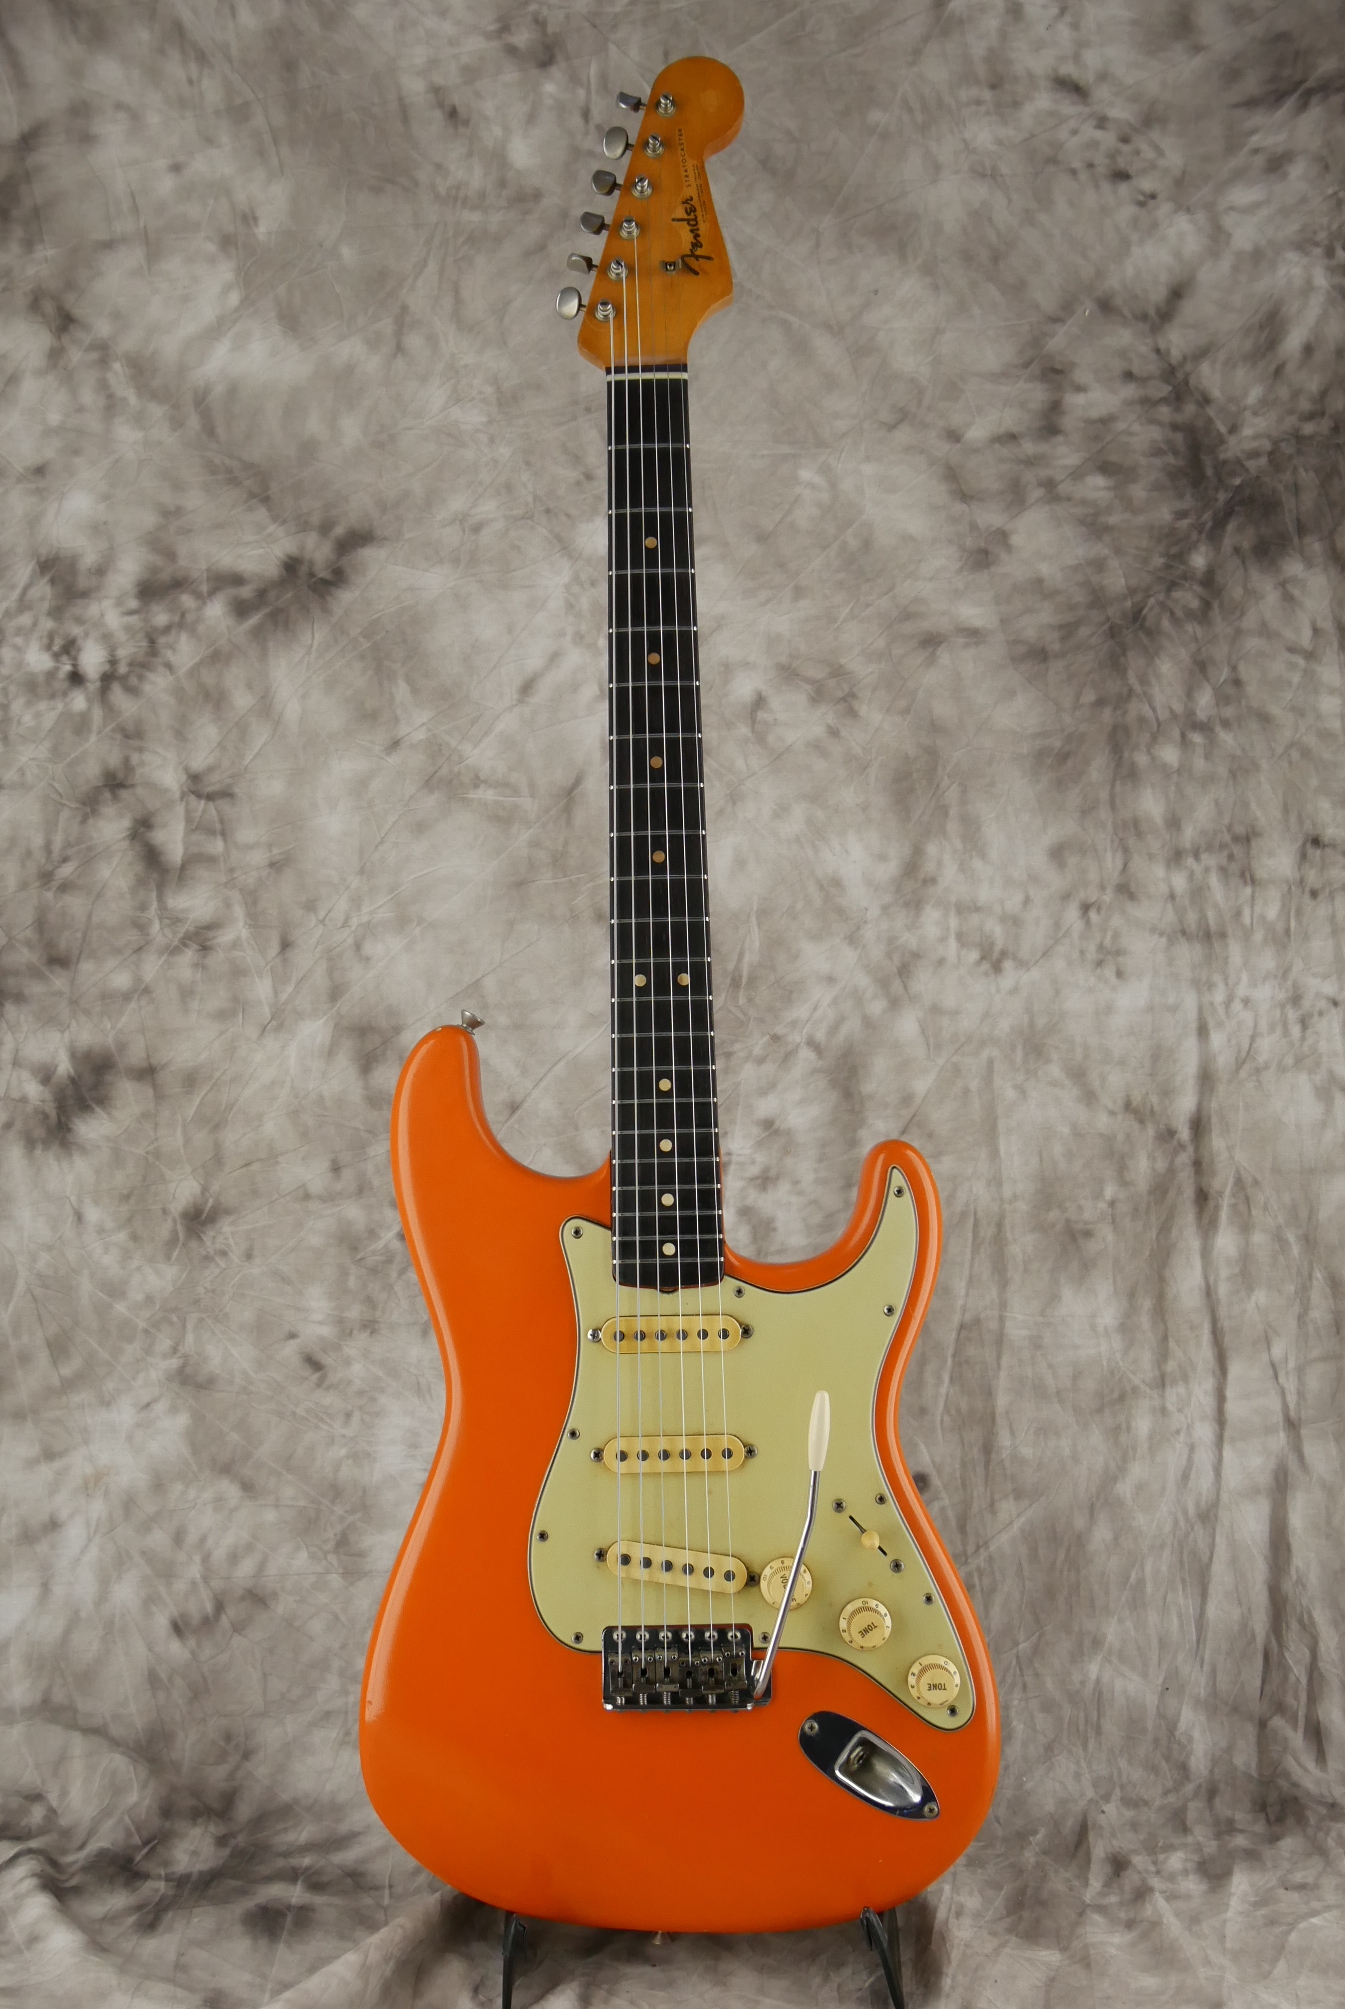 Fender-Stratocaster-1964-orange-refinish-001.JPG